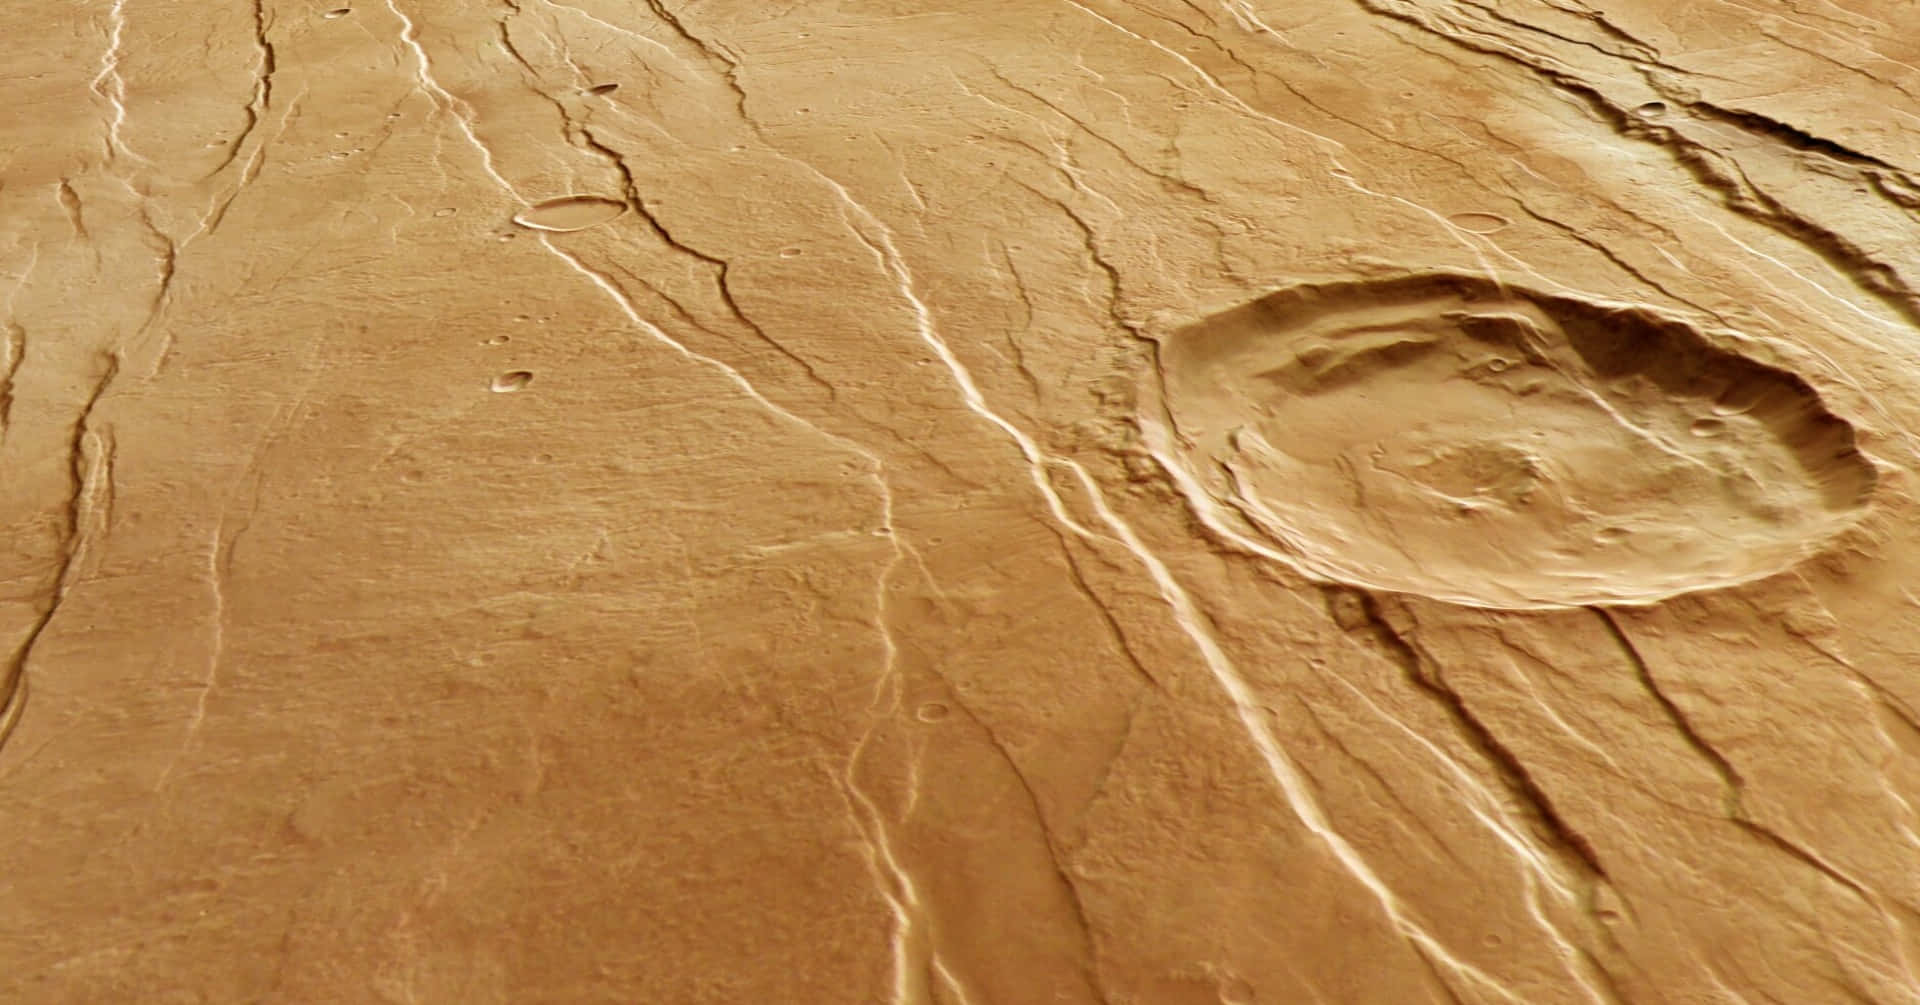 Immagini Della Superficie Di Marte